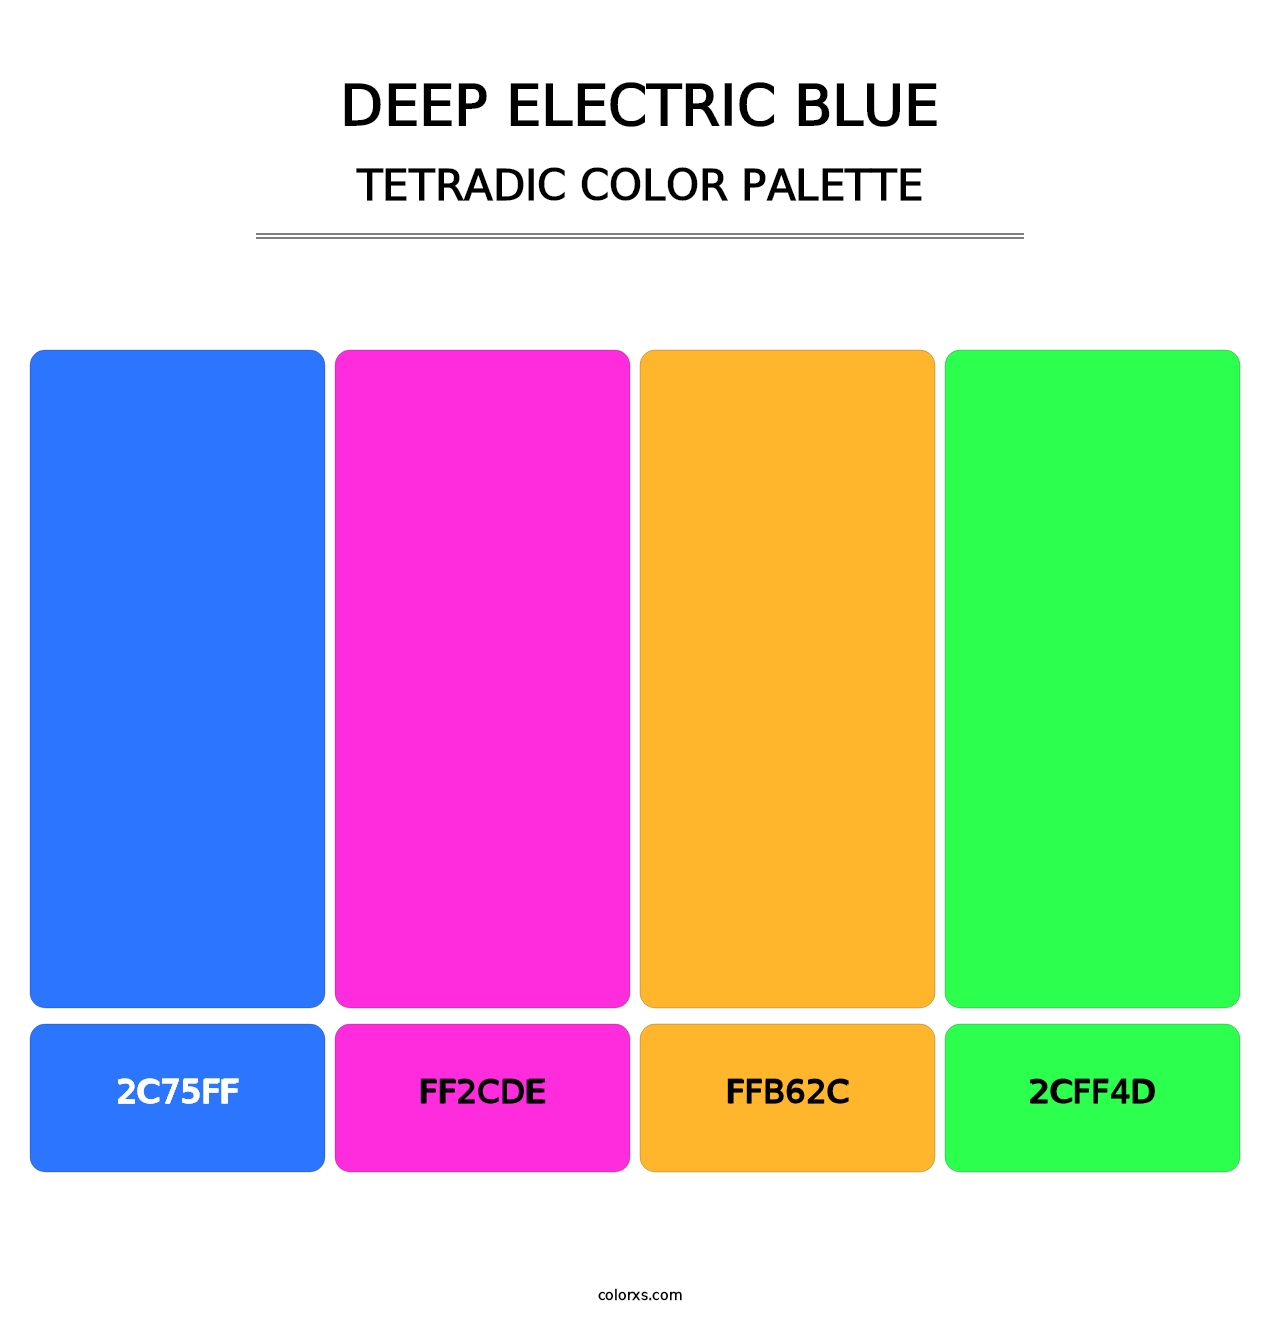 Deep Electric Blue - Tetradic Color Palette